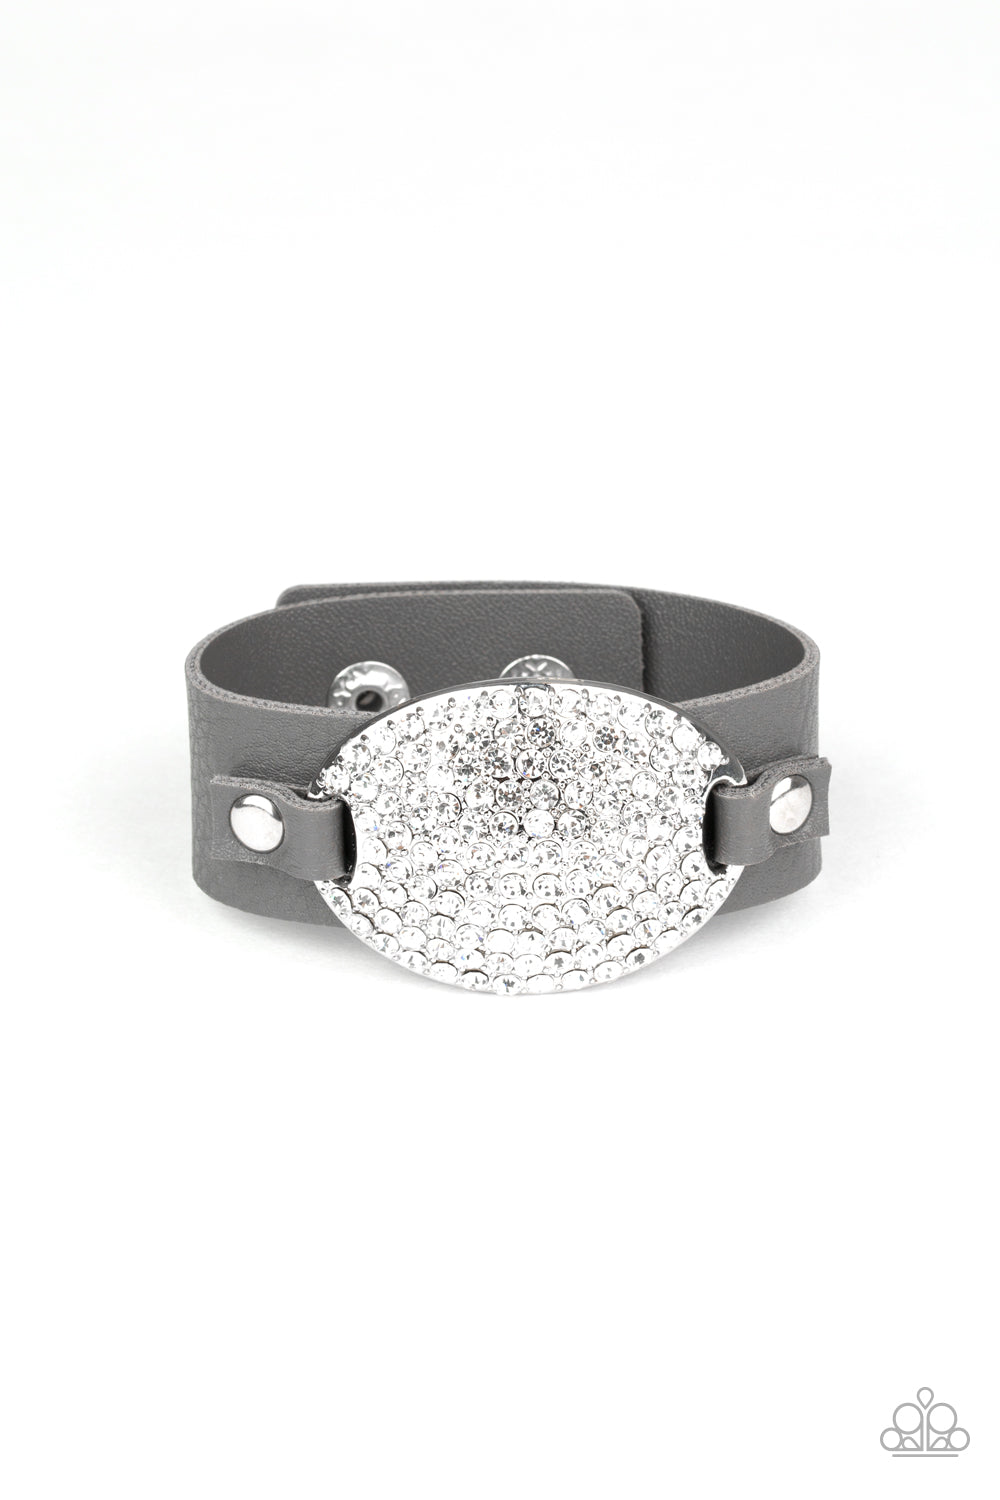 Paparazzi Accessories Better Recognize - Silver Bracelet 